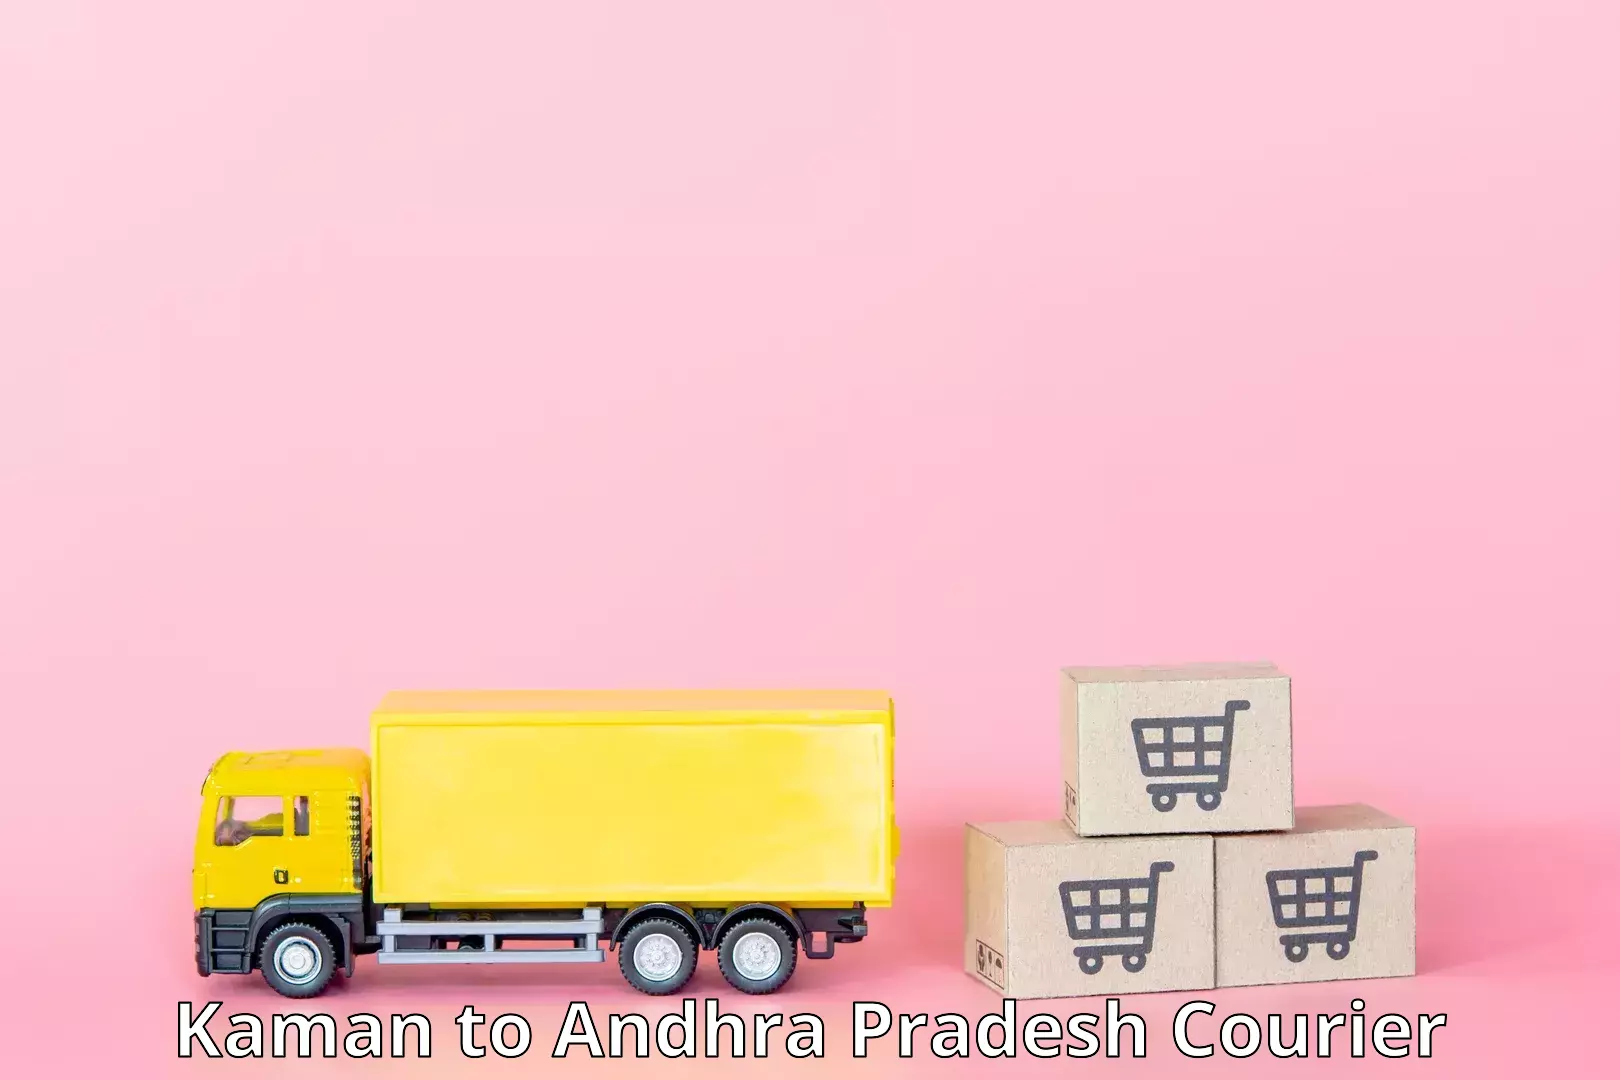 Multi-city courier Kaman to Andhra Pradesh